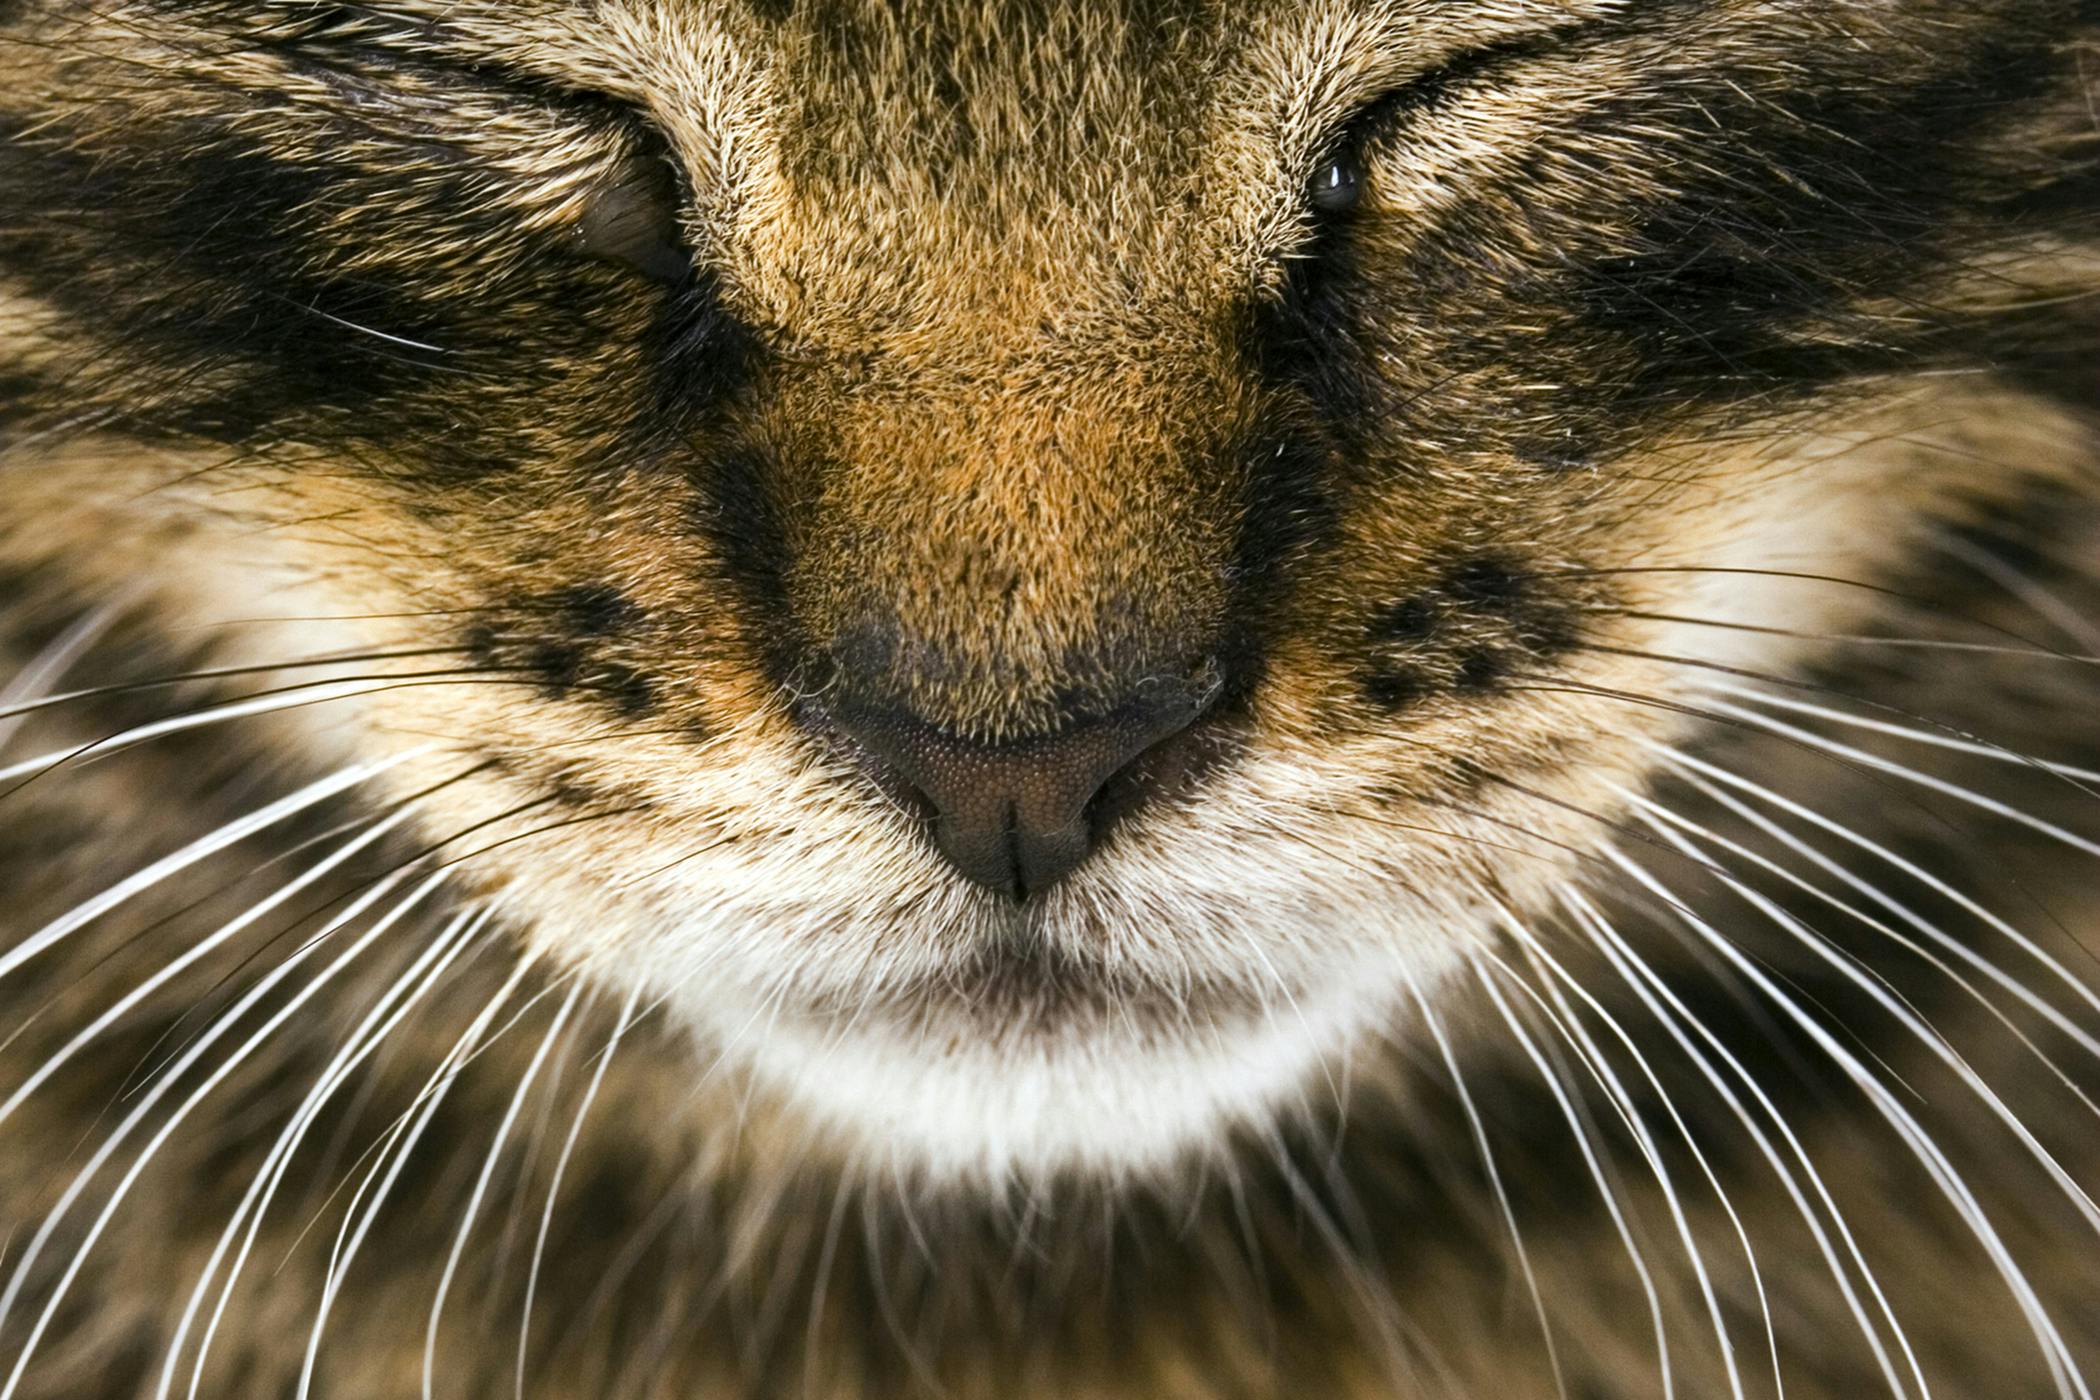 cat missing fur on nose